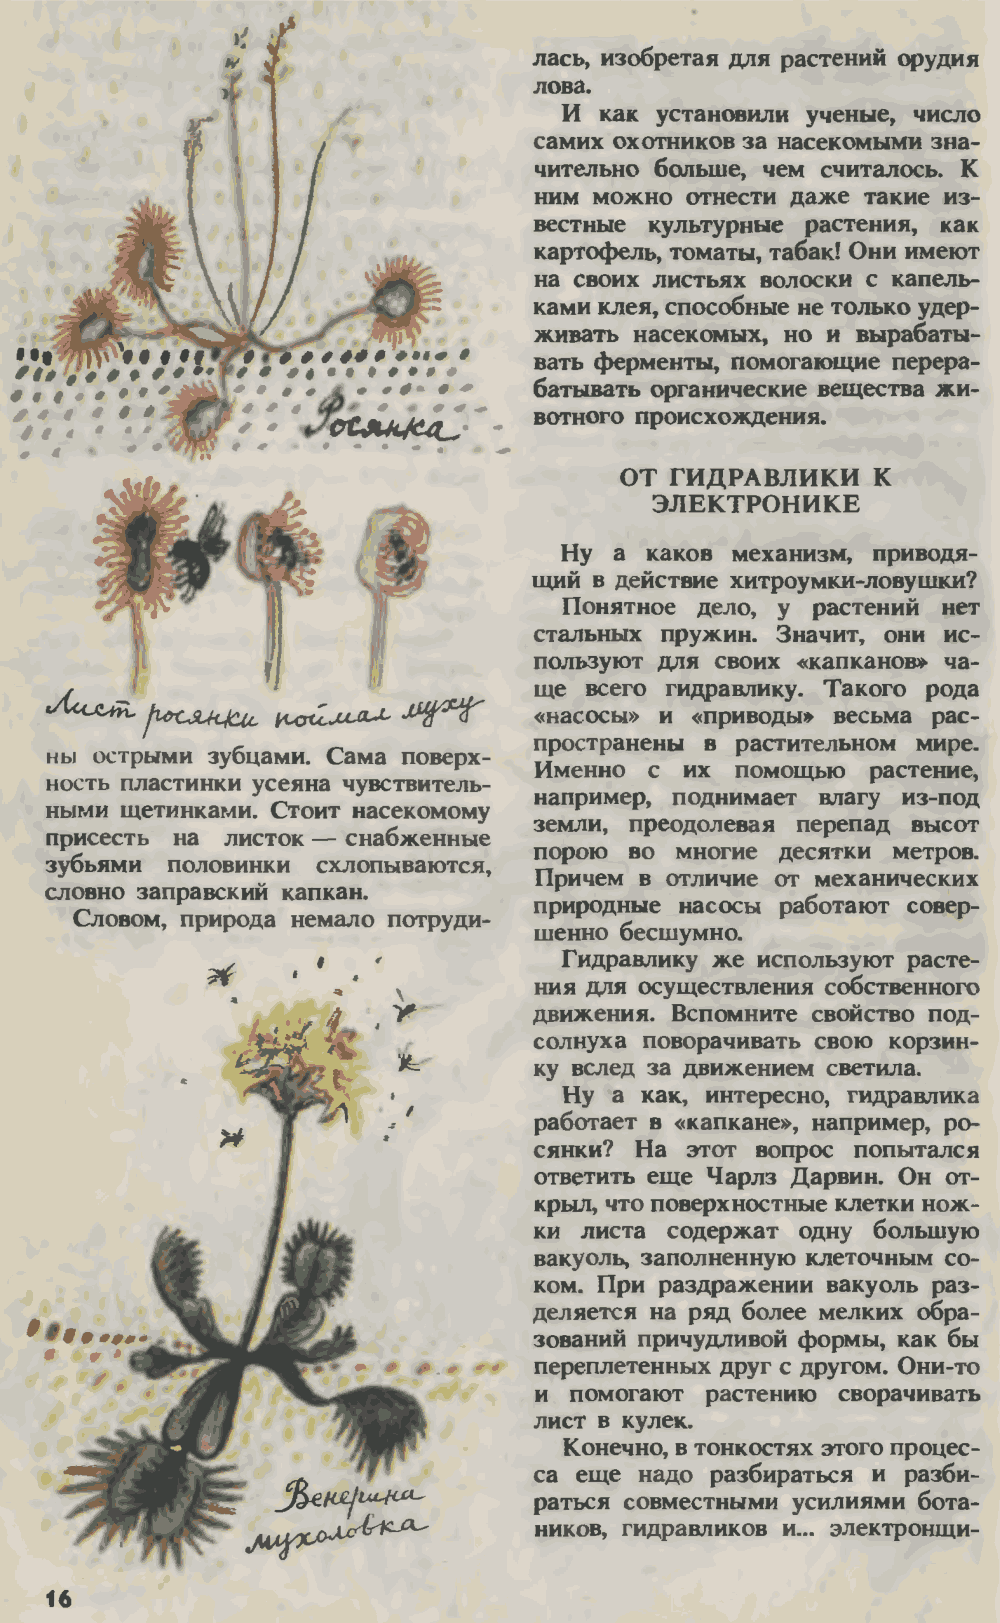 Растения и человек хоть и дальние, а родственники. О. Семенов. Юный техник, 1993, №3, с.14-19. Фотокопия №3